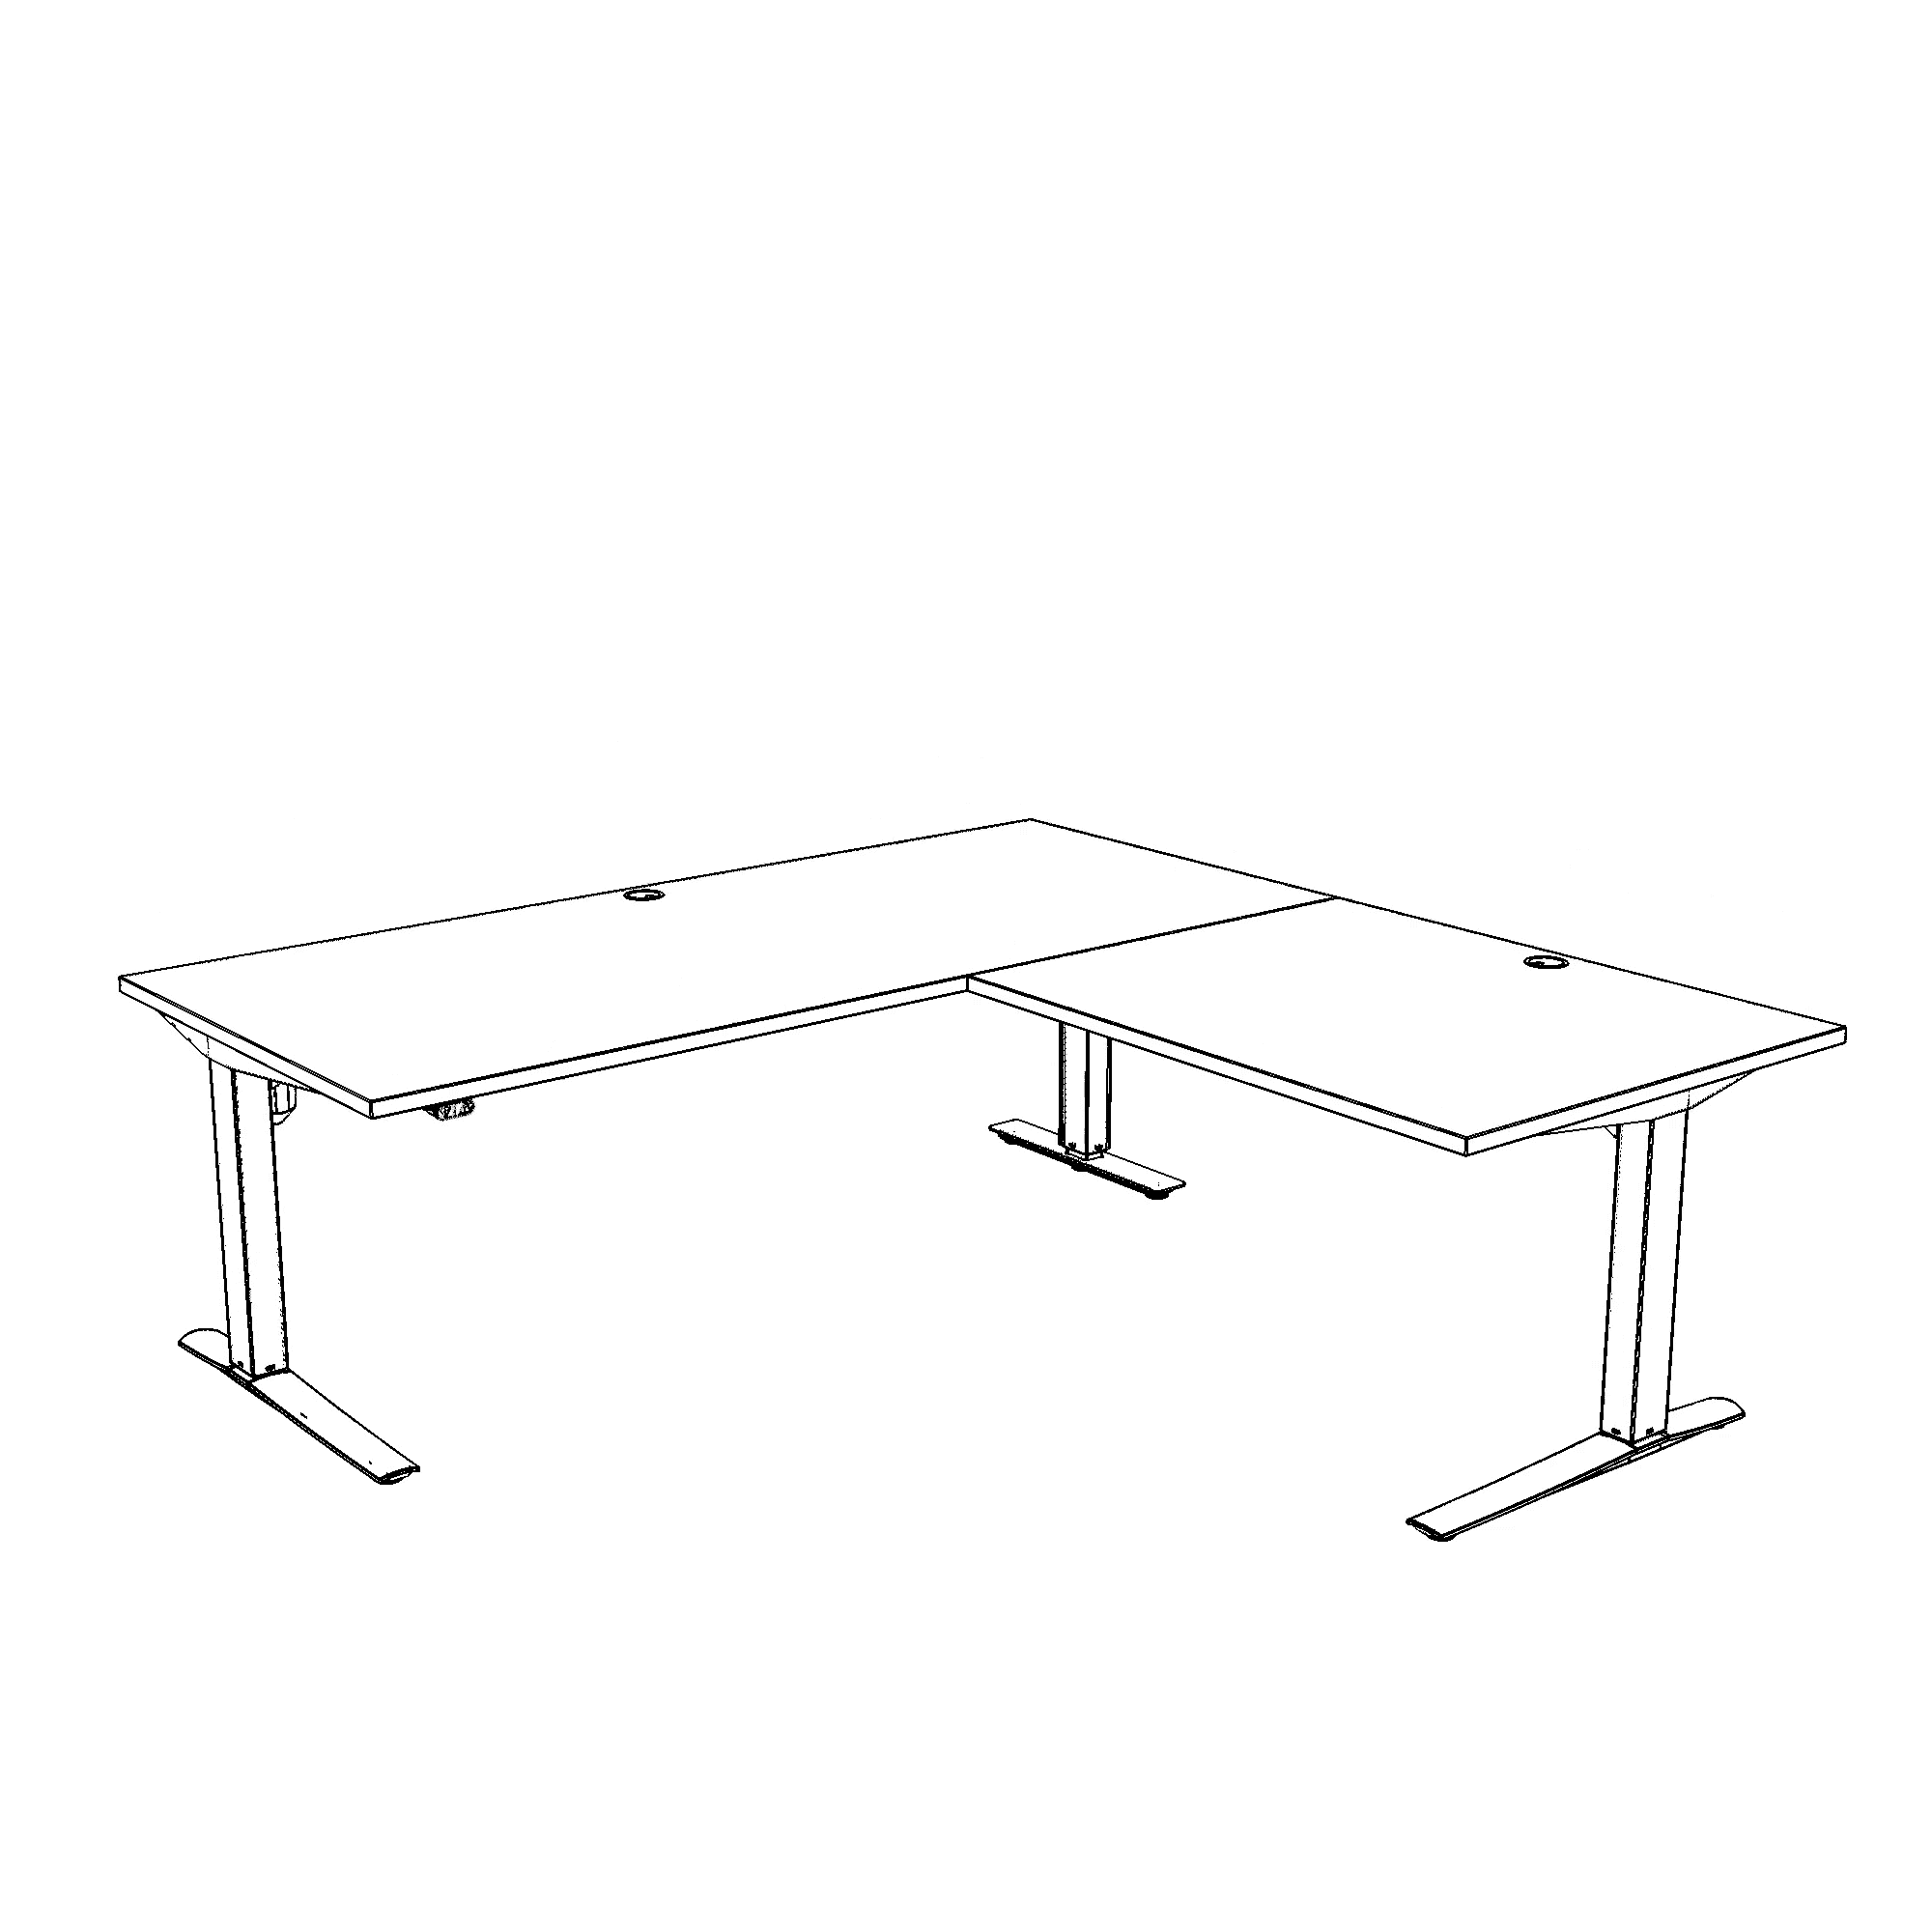 Elektrisch verstelbaar bureau | 180x180 cm | Wit met zwart frame